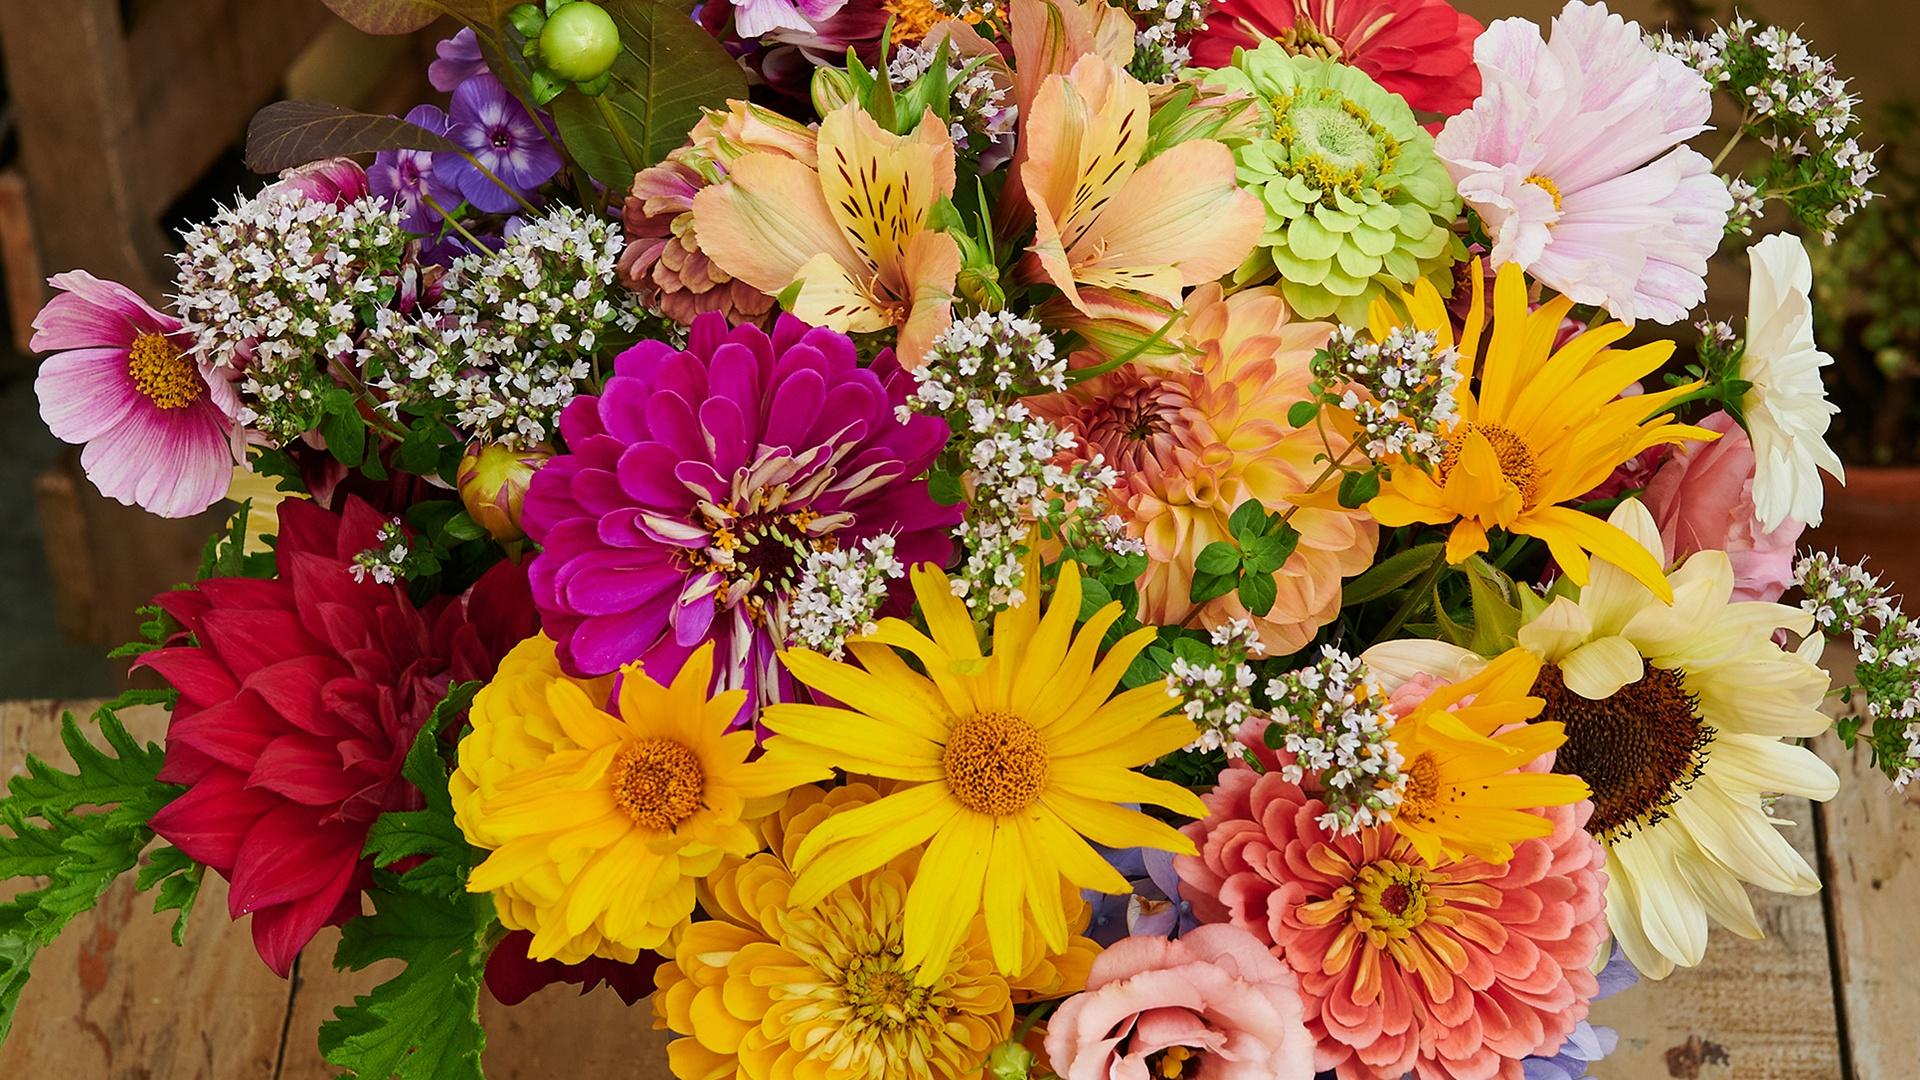 J Schwanke's Life In Bloom - Flower's Care - Twin Cities PBS